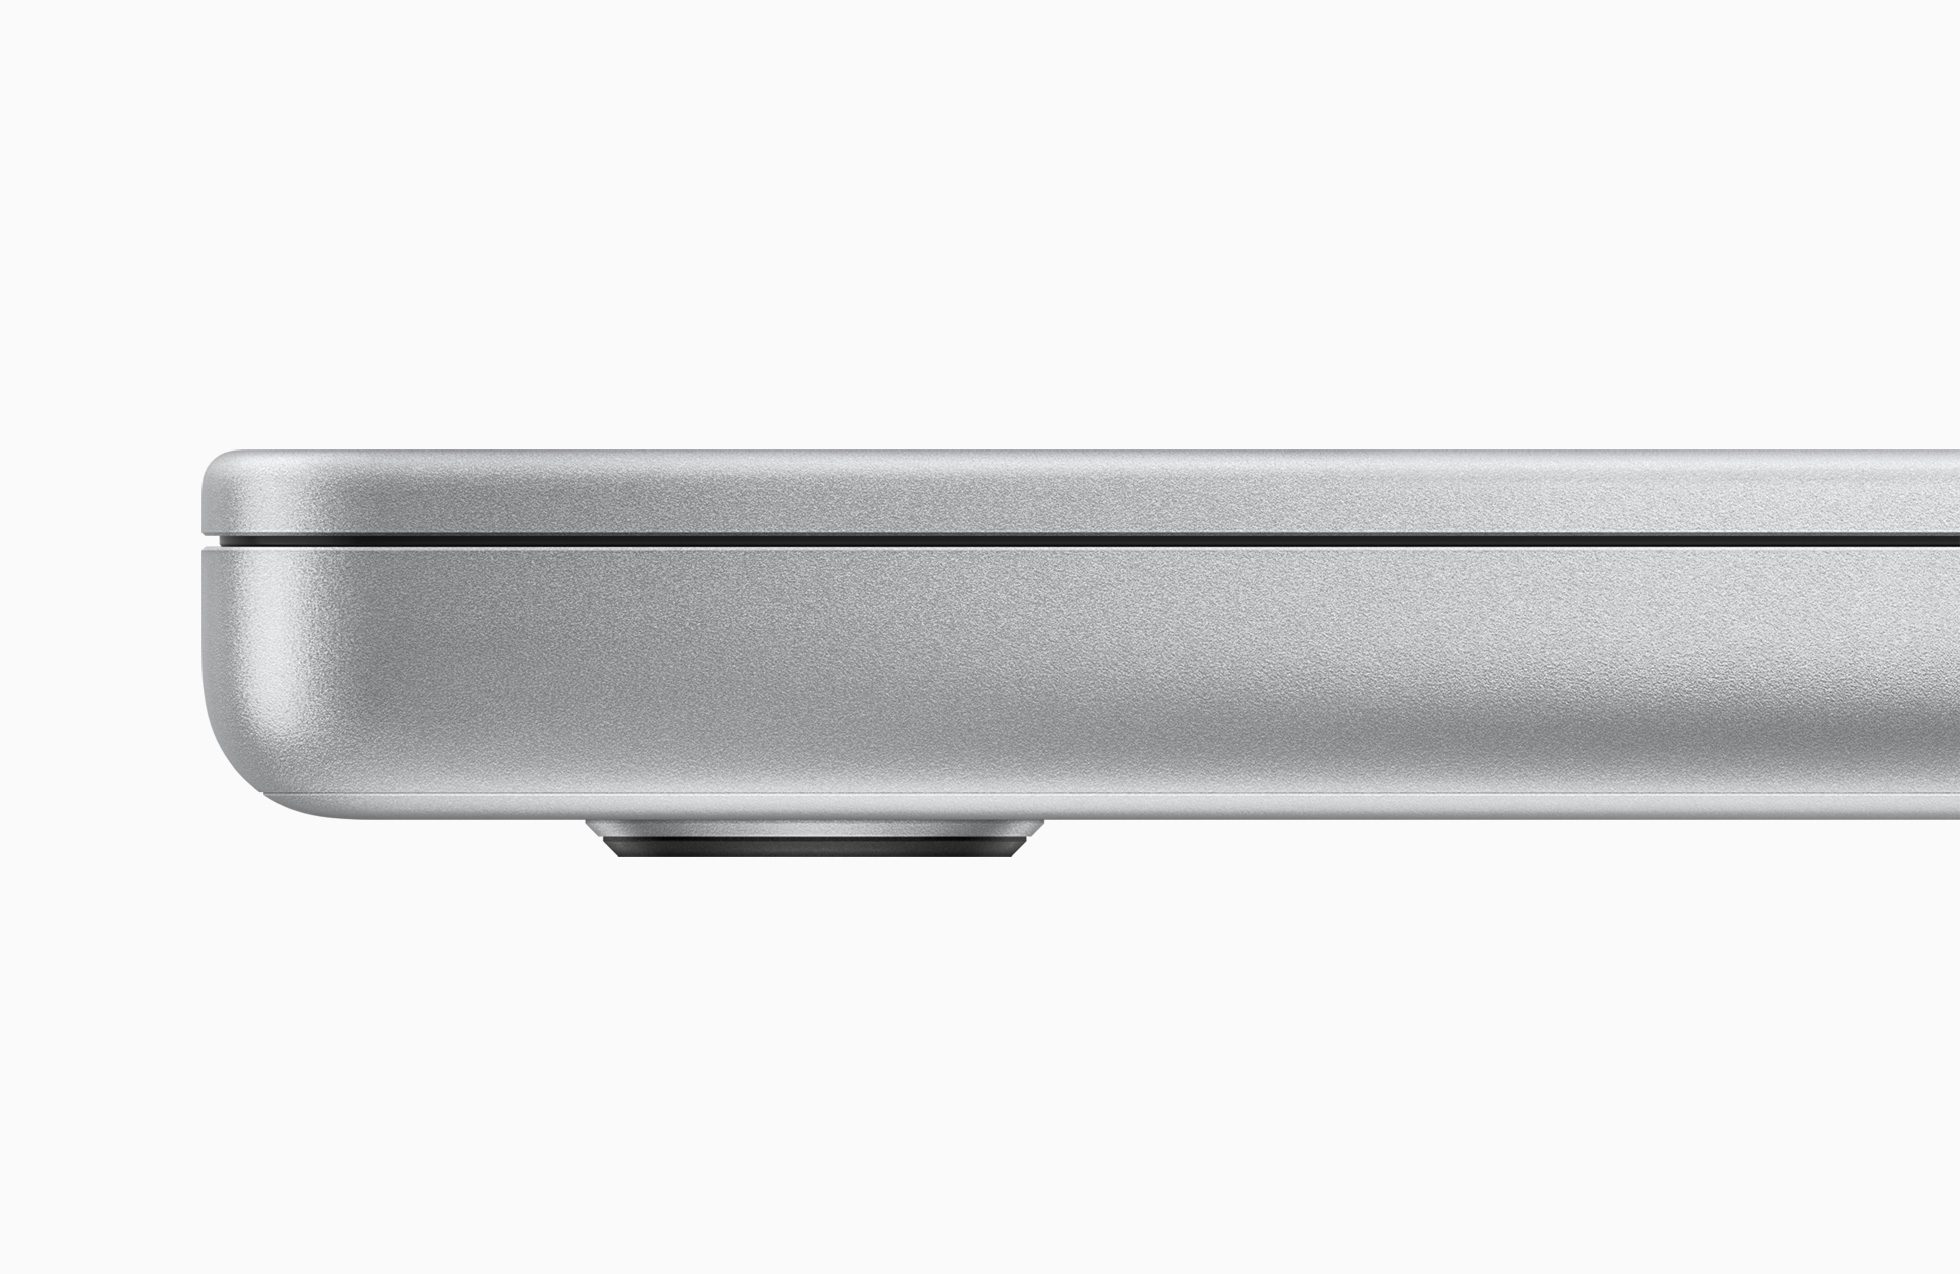 16-inch MacBook Pro 2021 body in zilvergrijs